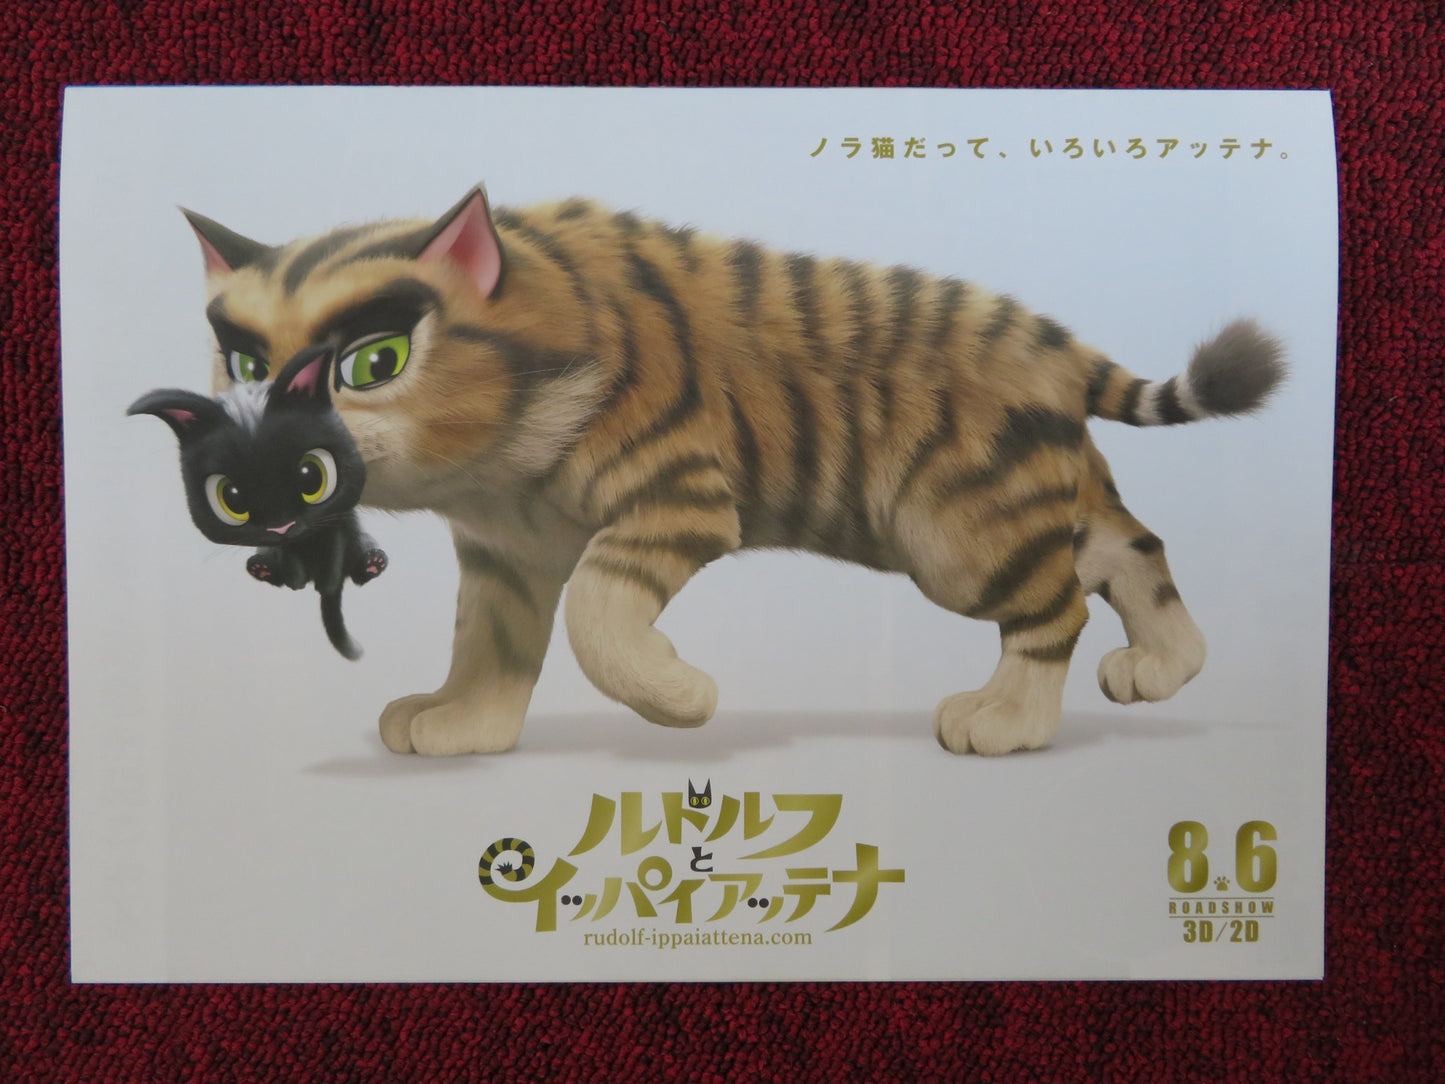 RUDOLF THE BLACK CAT JAPANESE CHIRASHI (B5) POSTER MAO INOUE RYOHEI SUZUKI 2016